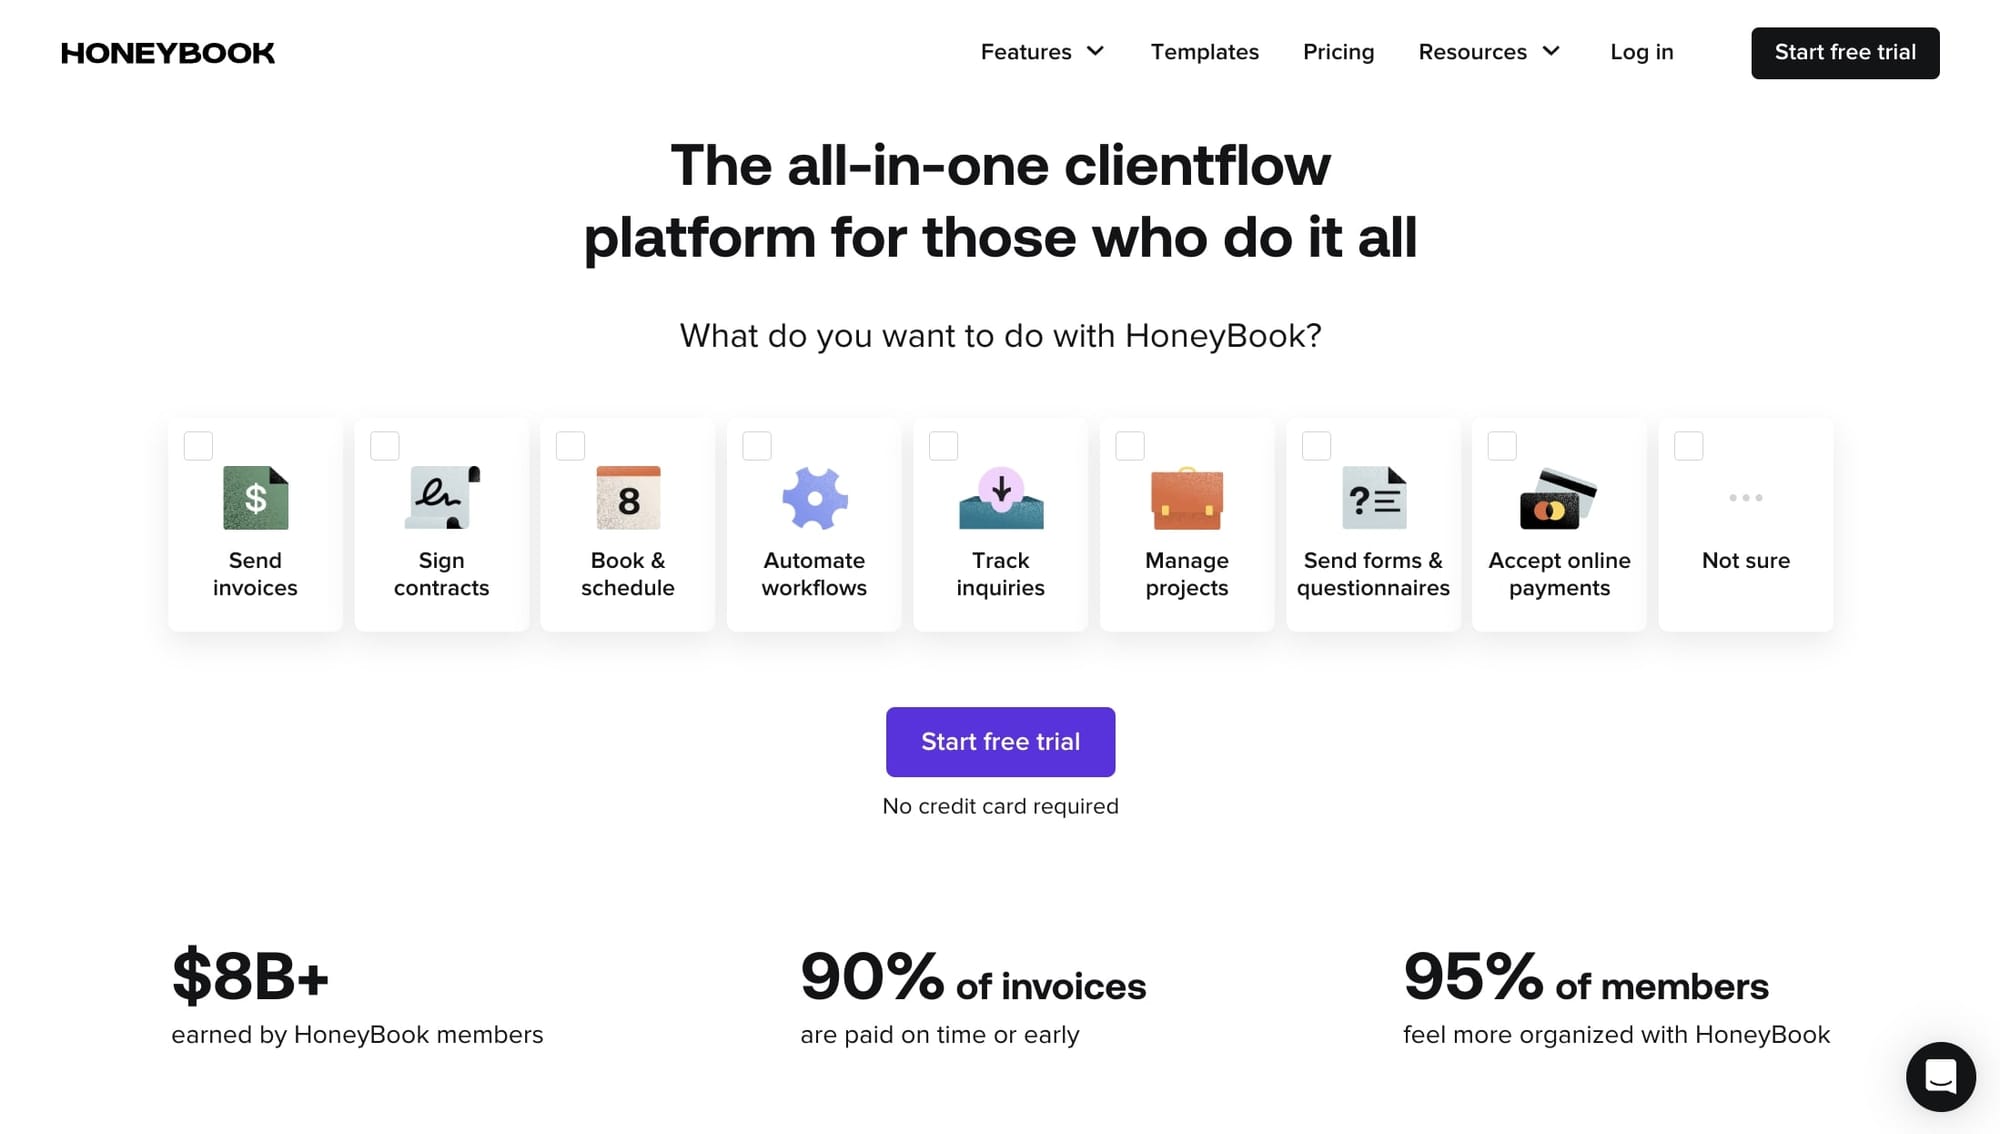 HoneyBook's freelance suite of tools